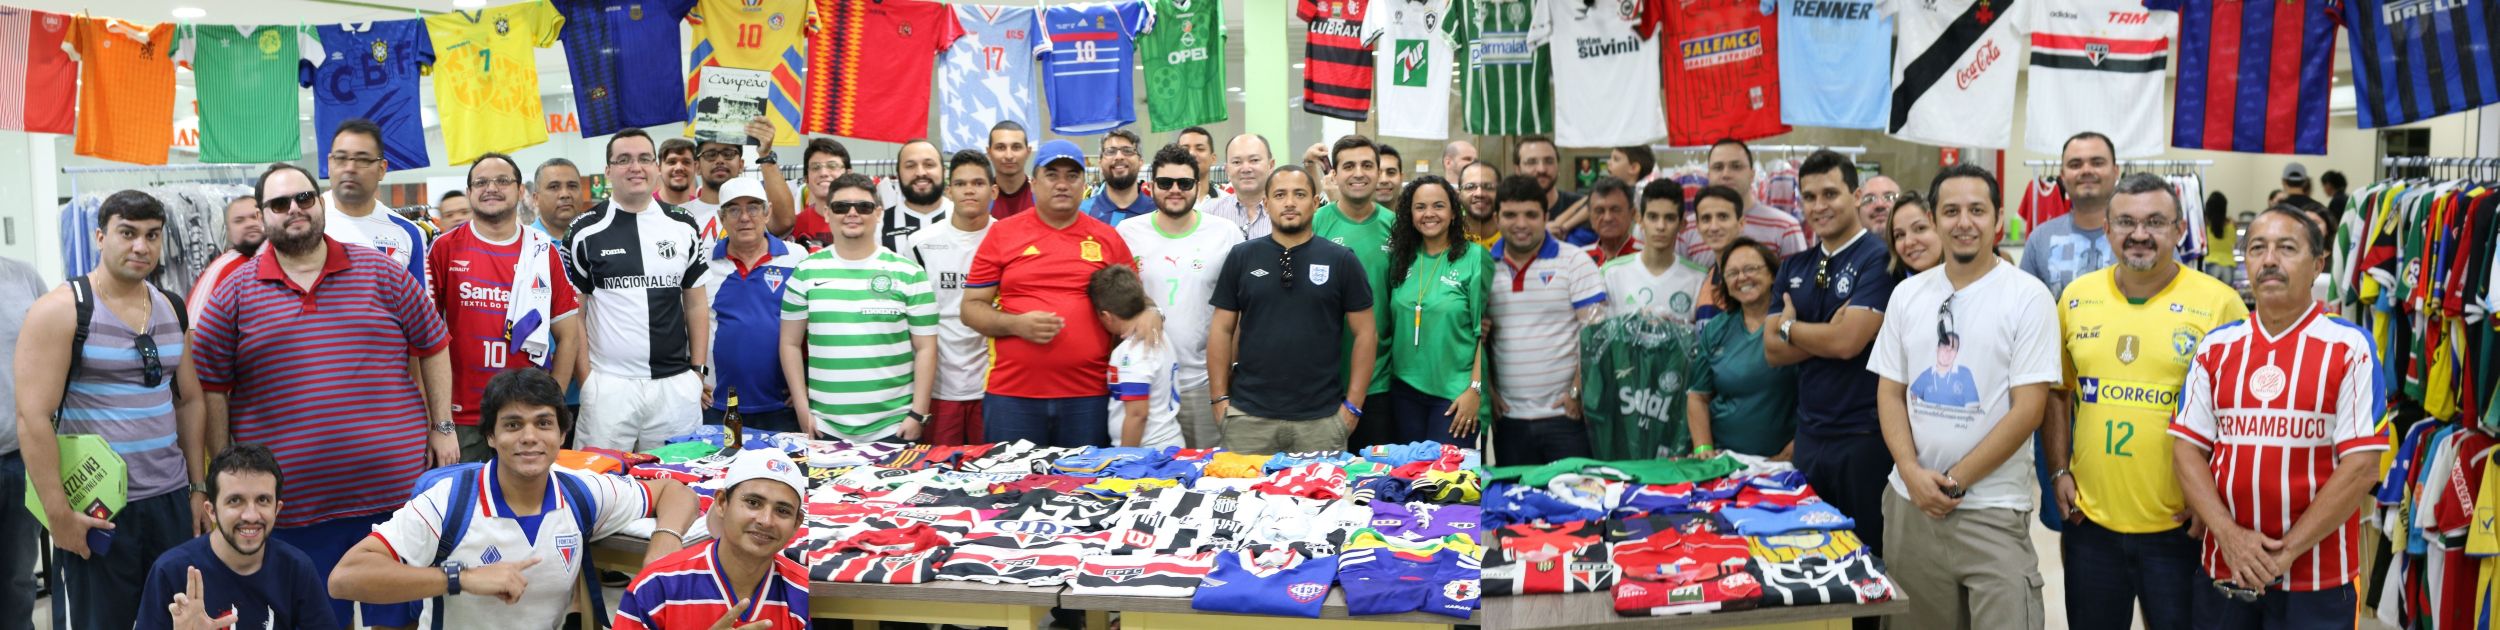 Vinte colecionadores levaram parte de suas coleções para exibição (Foto: Danilo Mendonça/Verminosos por Futebol)